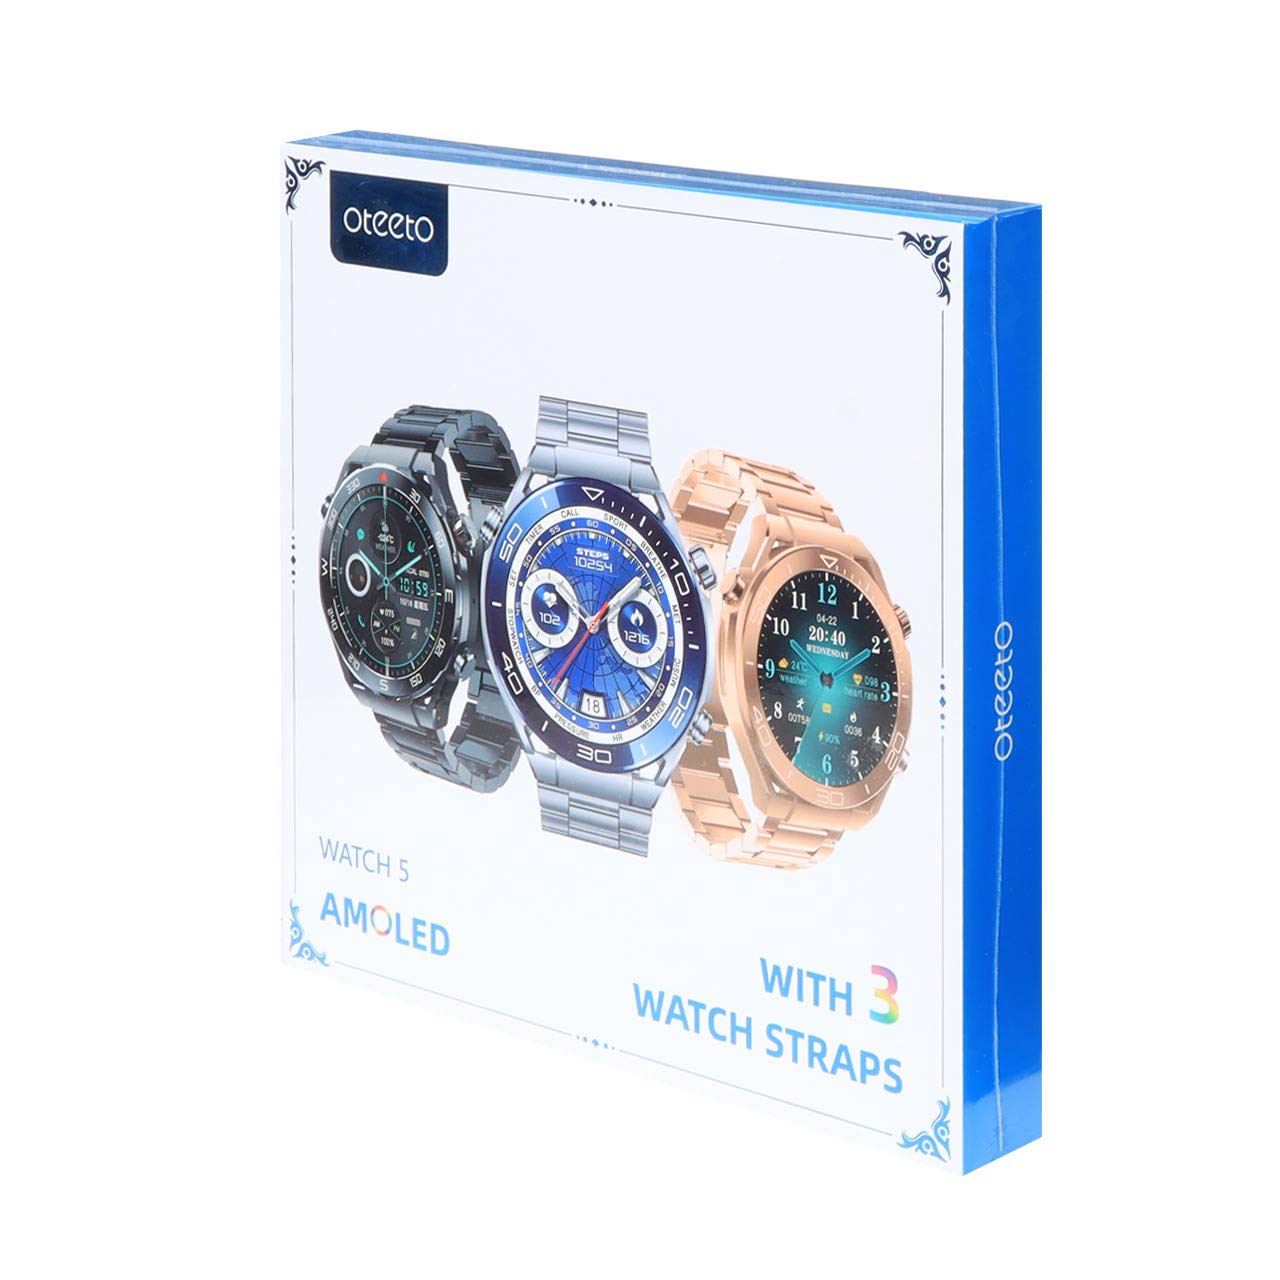 ساعت هوشمند Oteeto مدل Watch5